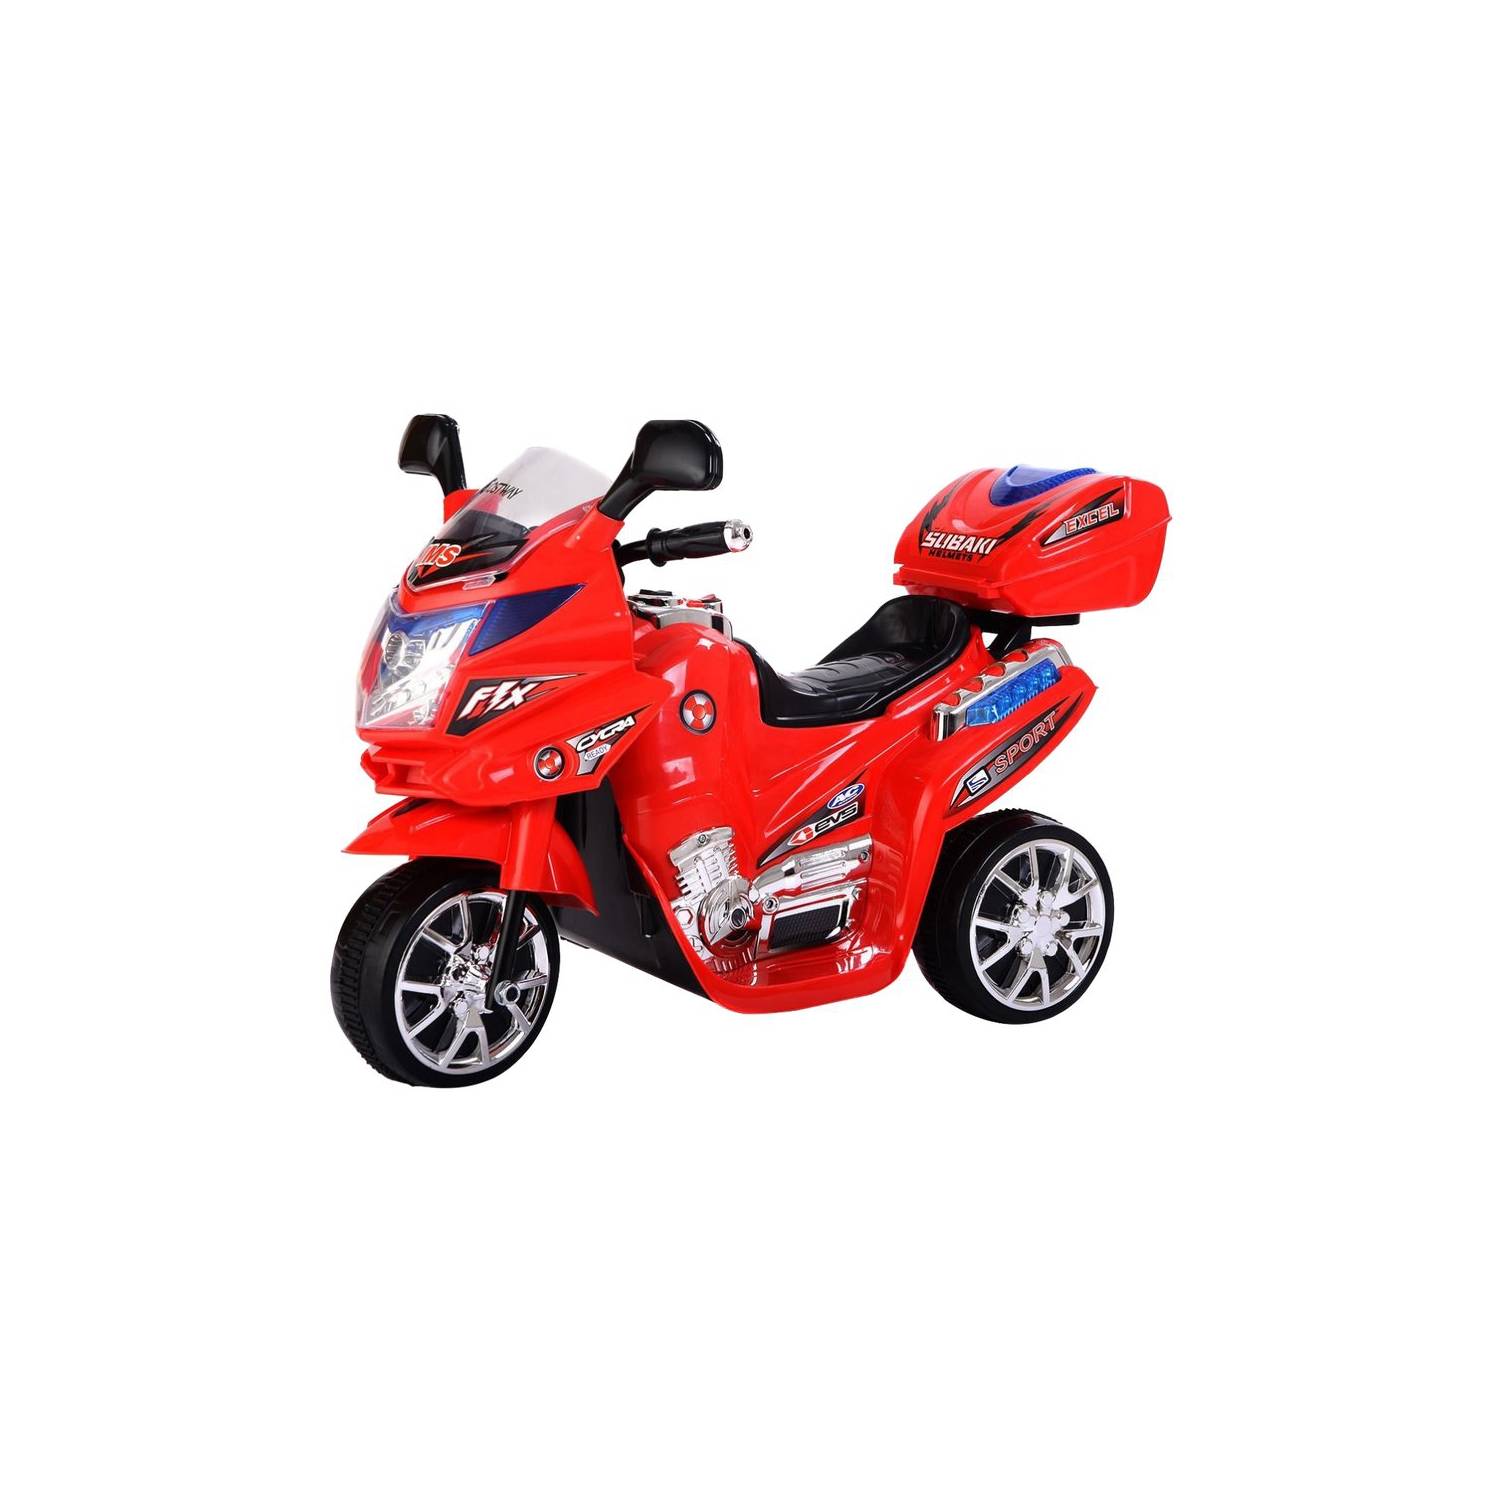 Moto Eléctrica Para Niños Magnum Pro Montable 6V Rojo PRINSEL